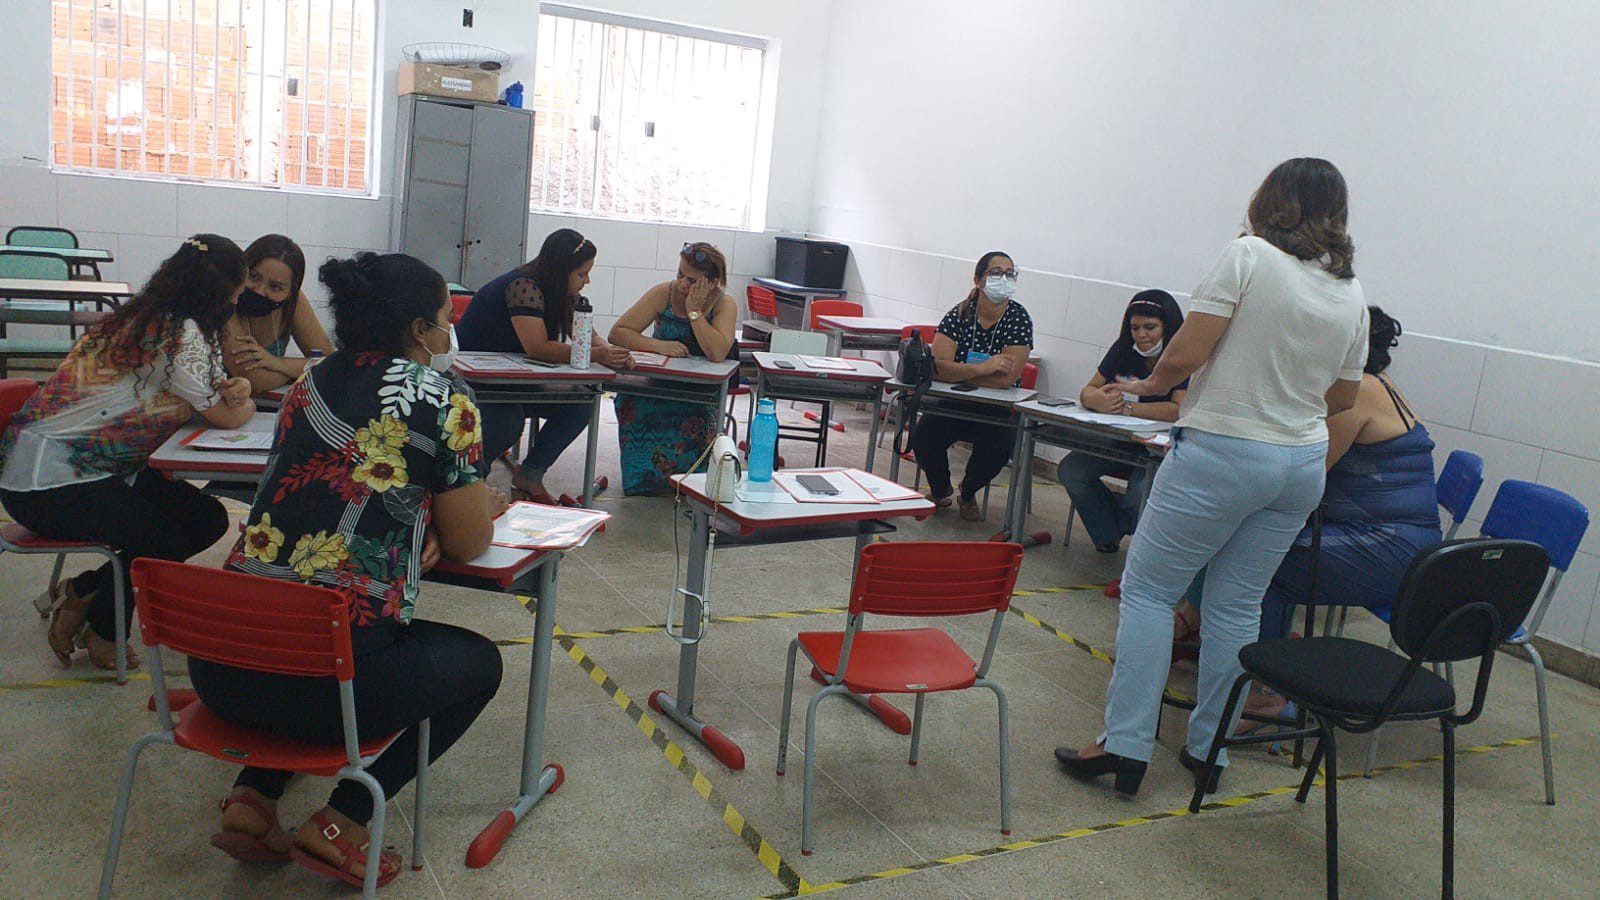 ENTRE FOLHAS: IV Conferência Municipal discute propostas para a melhoria da educação brasileira